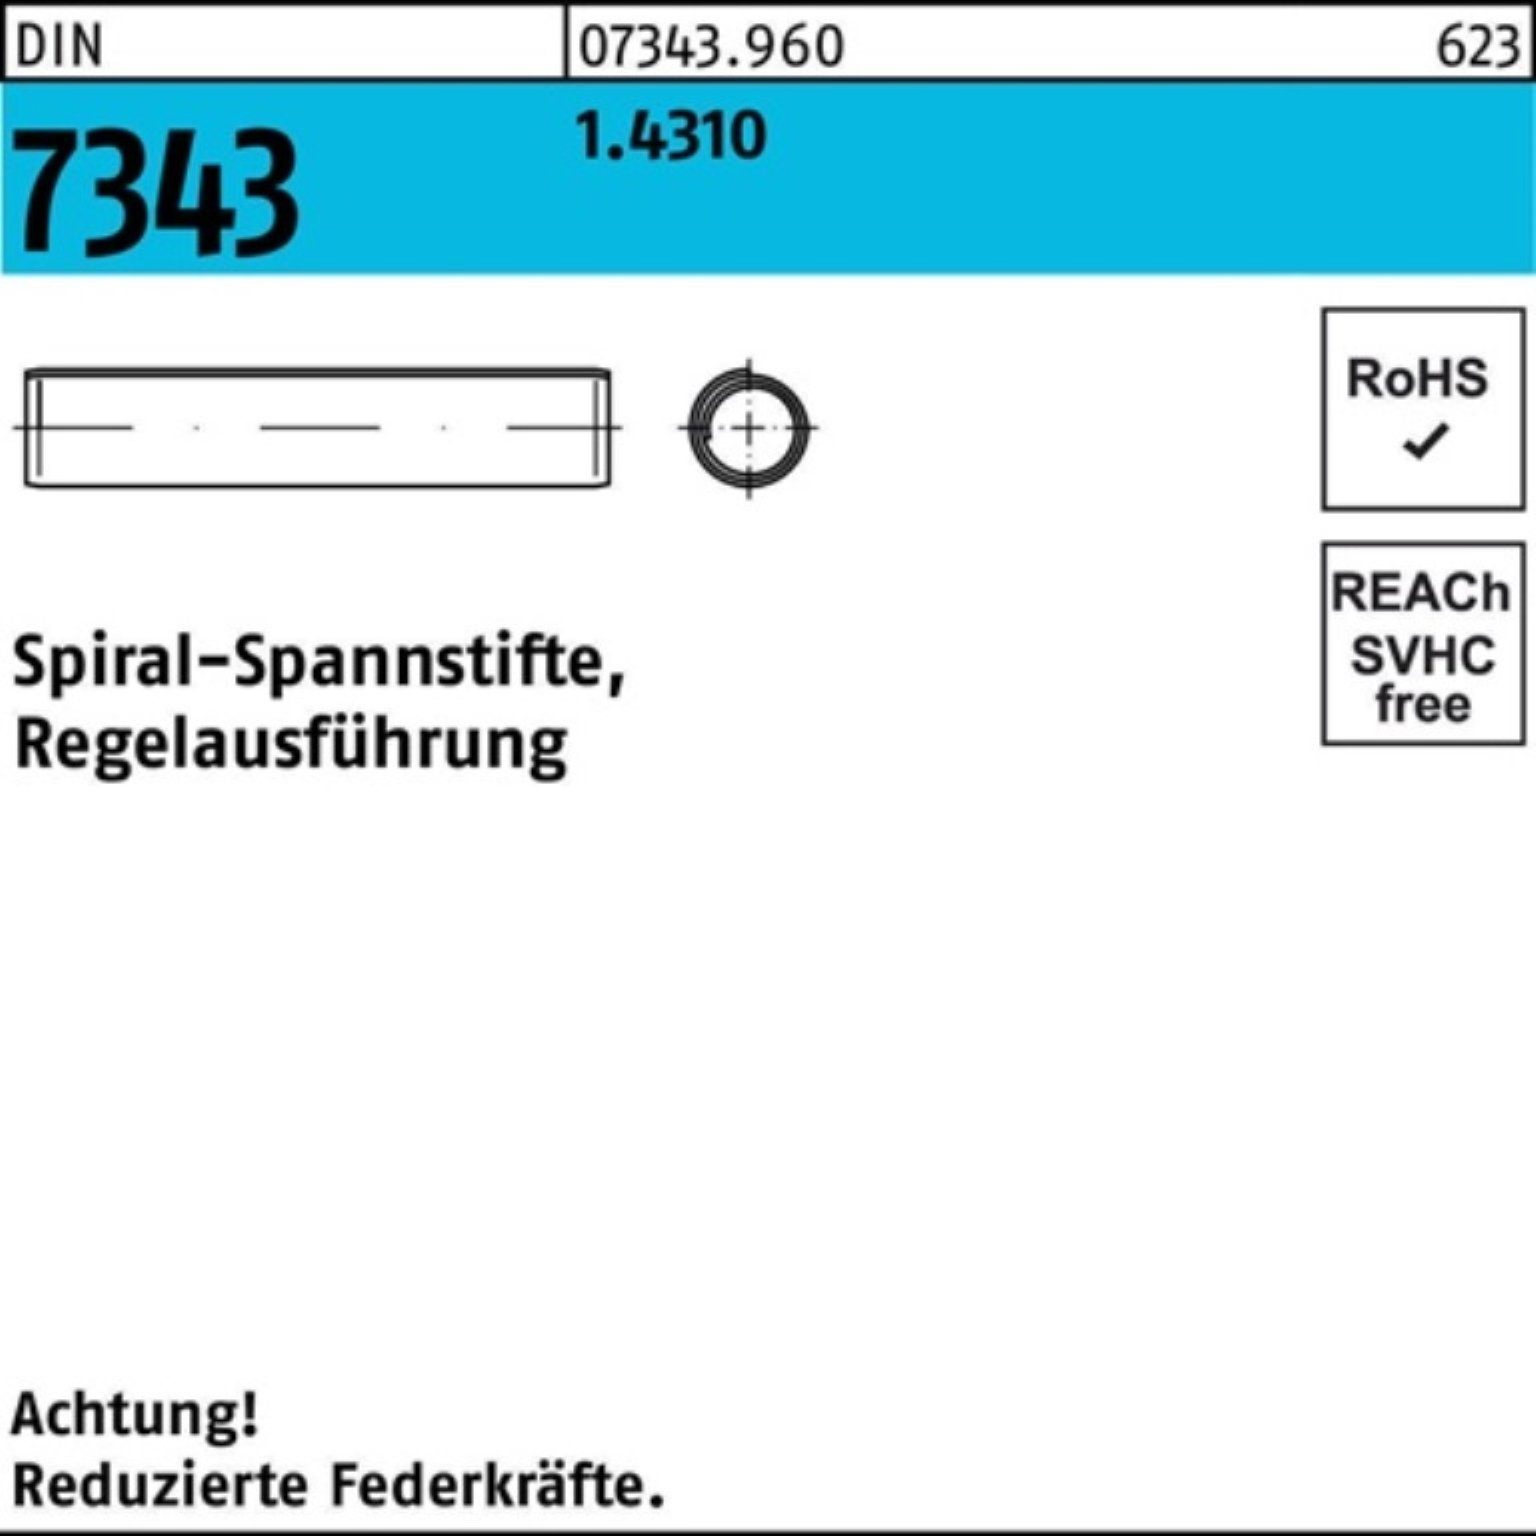 Reyher Spannstift 500er Pack Spiralspannstift 1.4310 28 5x 8750 7343/ISO Regelausf. DIN